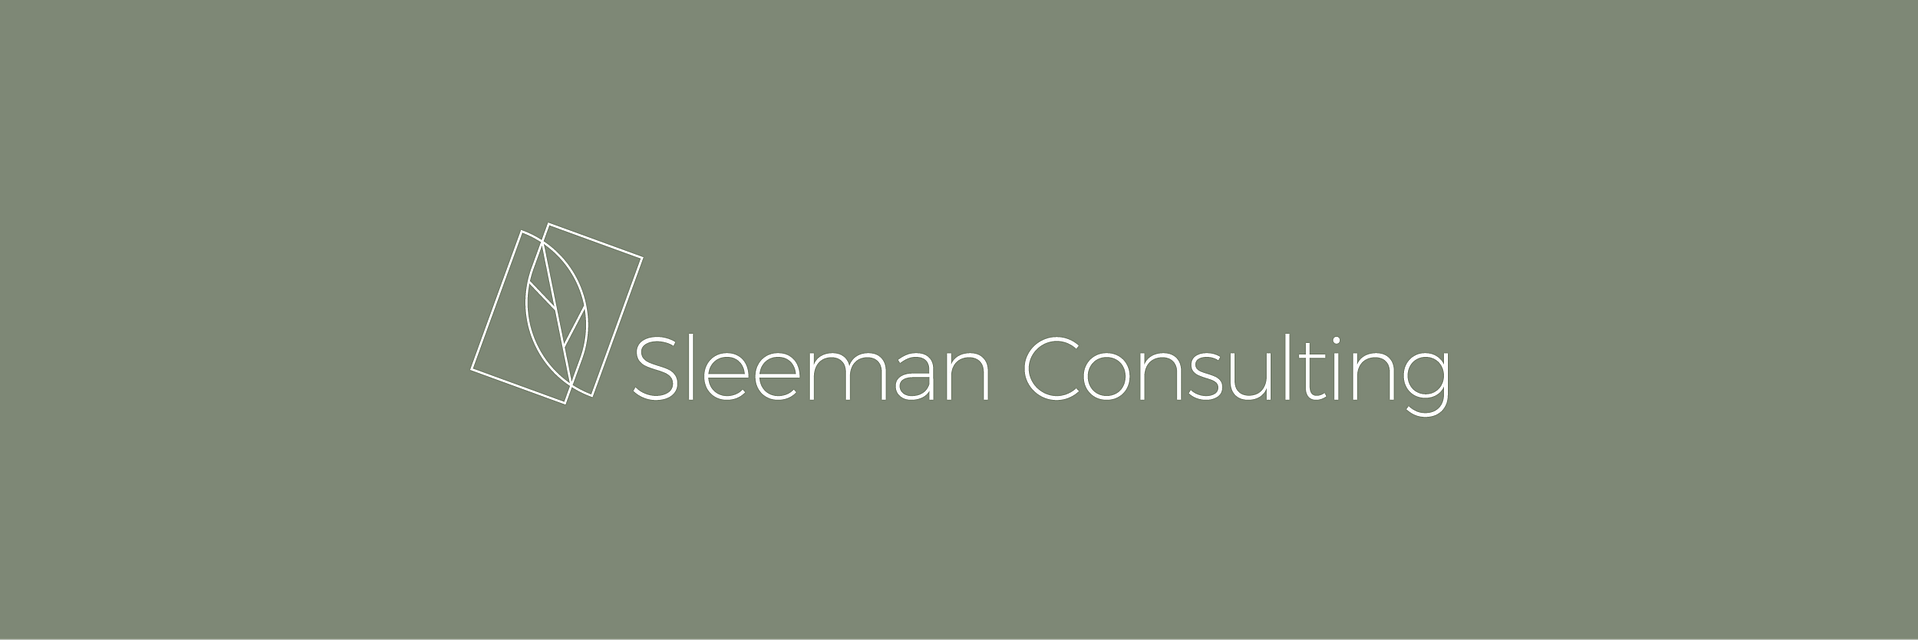 Logo redesign van Sleeman Consulting